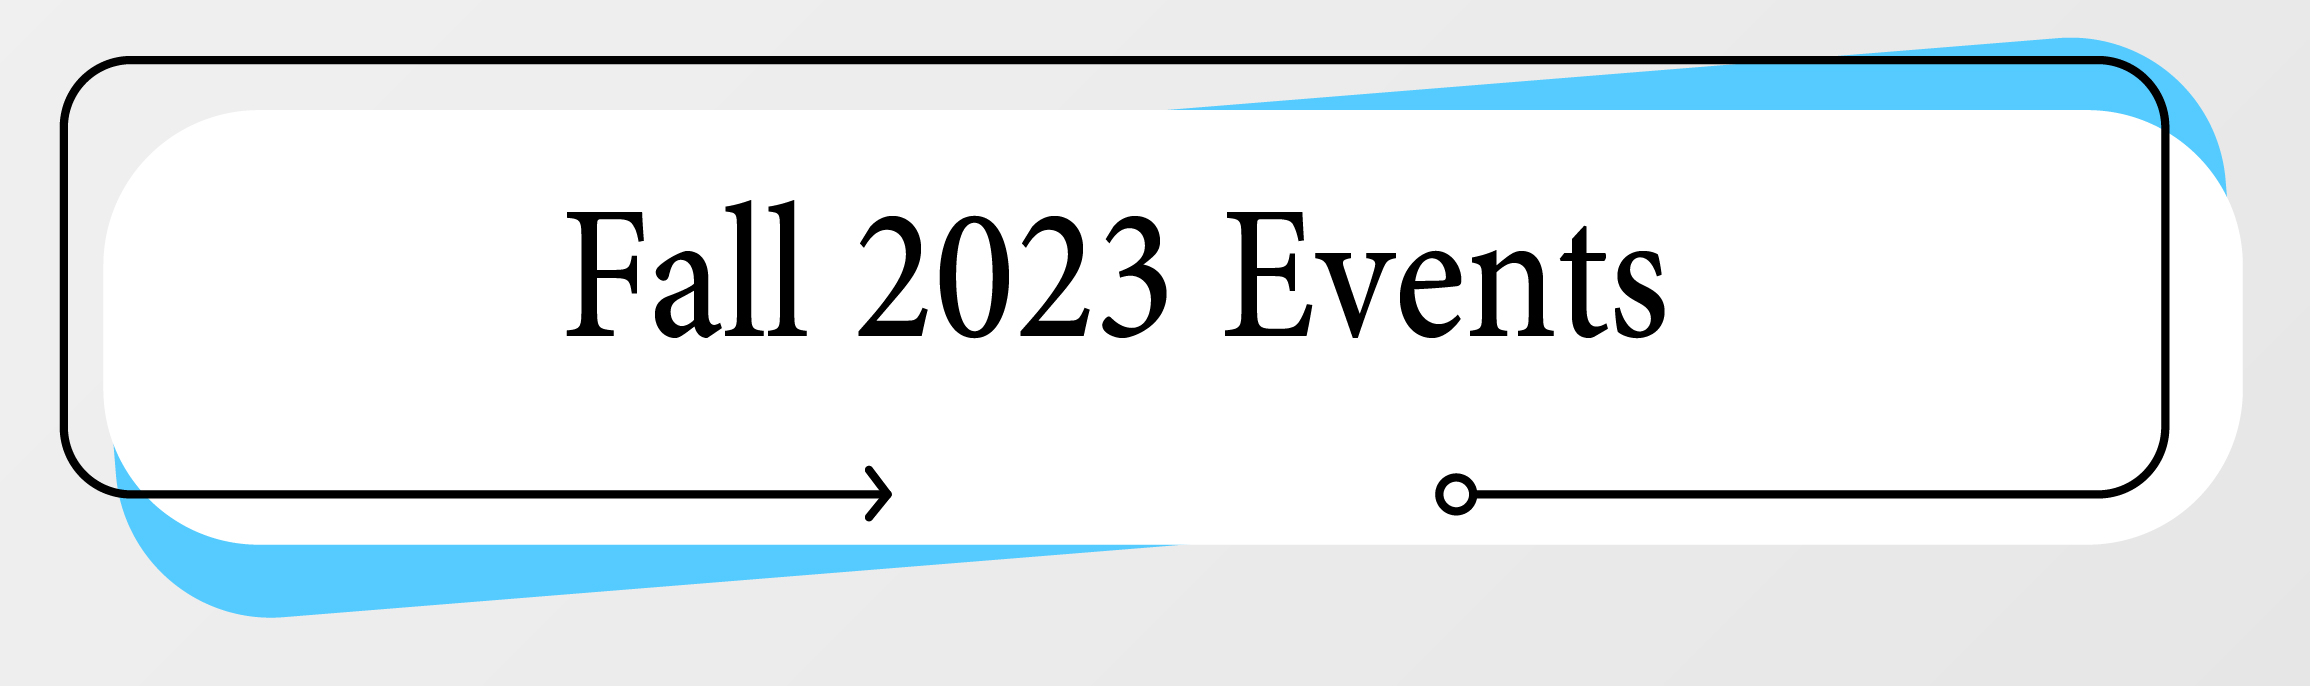 Fall 2023 Events_Mesa de trabajo 1